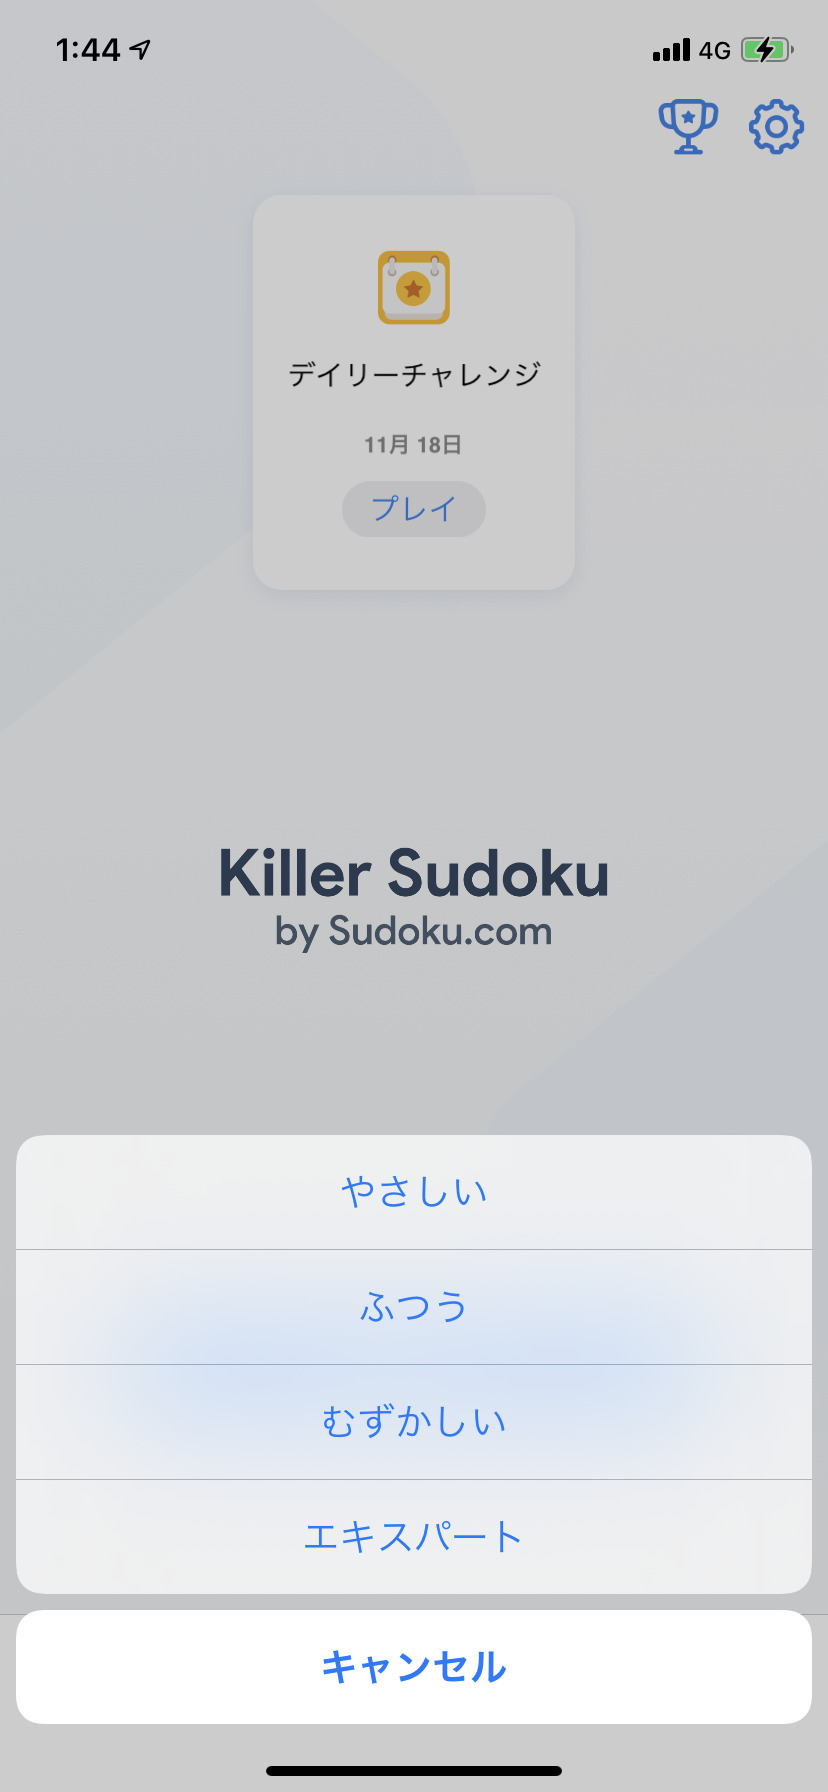 キラーナンプレ Sudoku.comの難易度選択画像